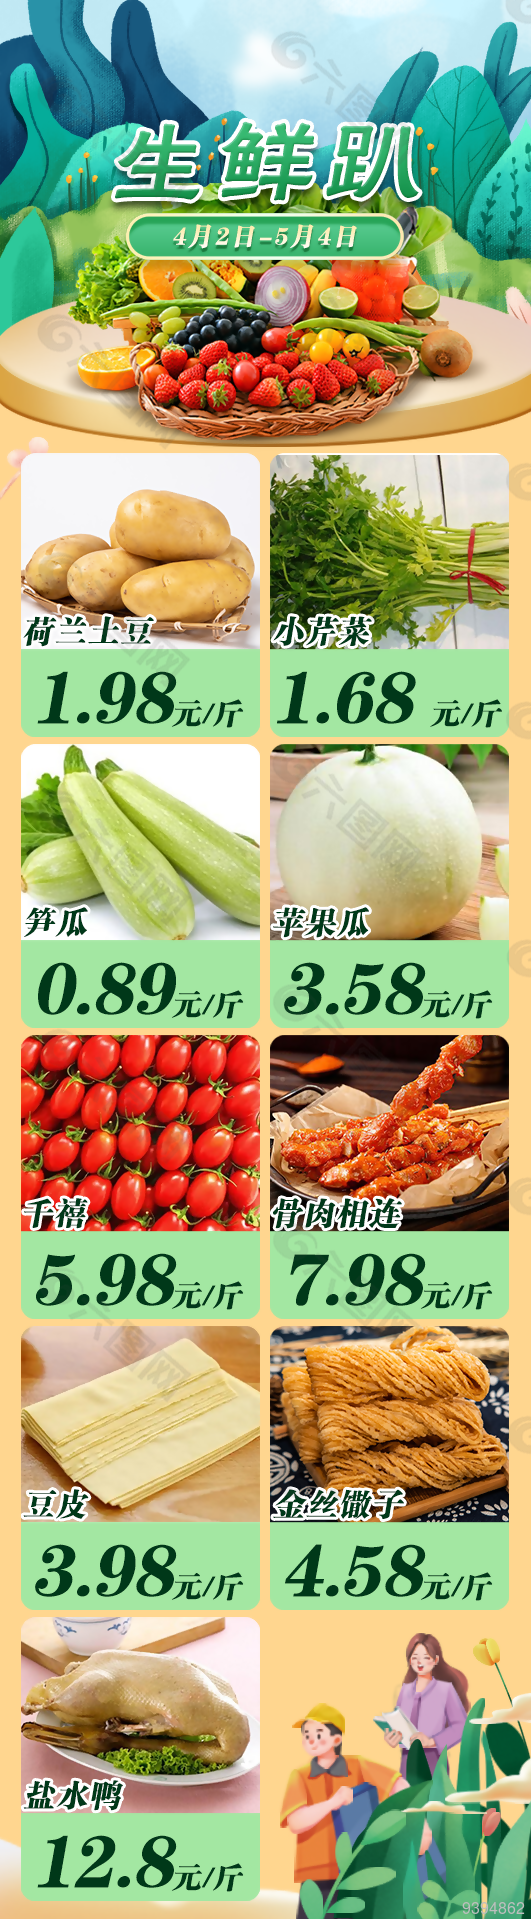 蔬菜海报微信宣传长图下载